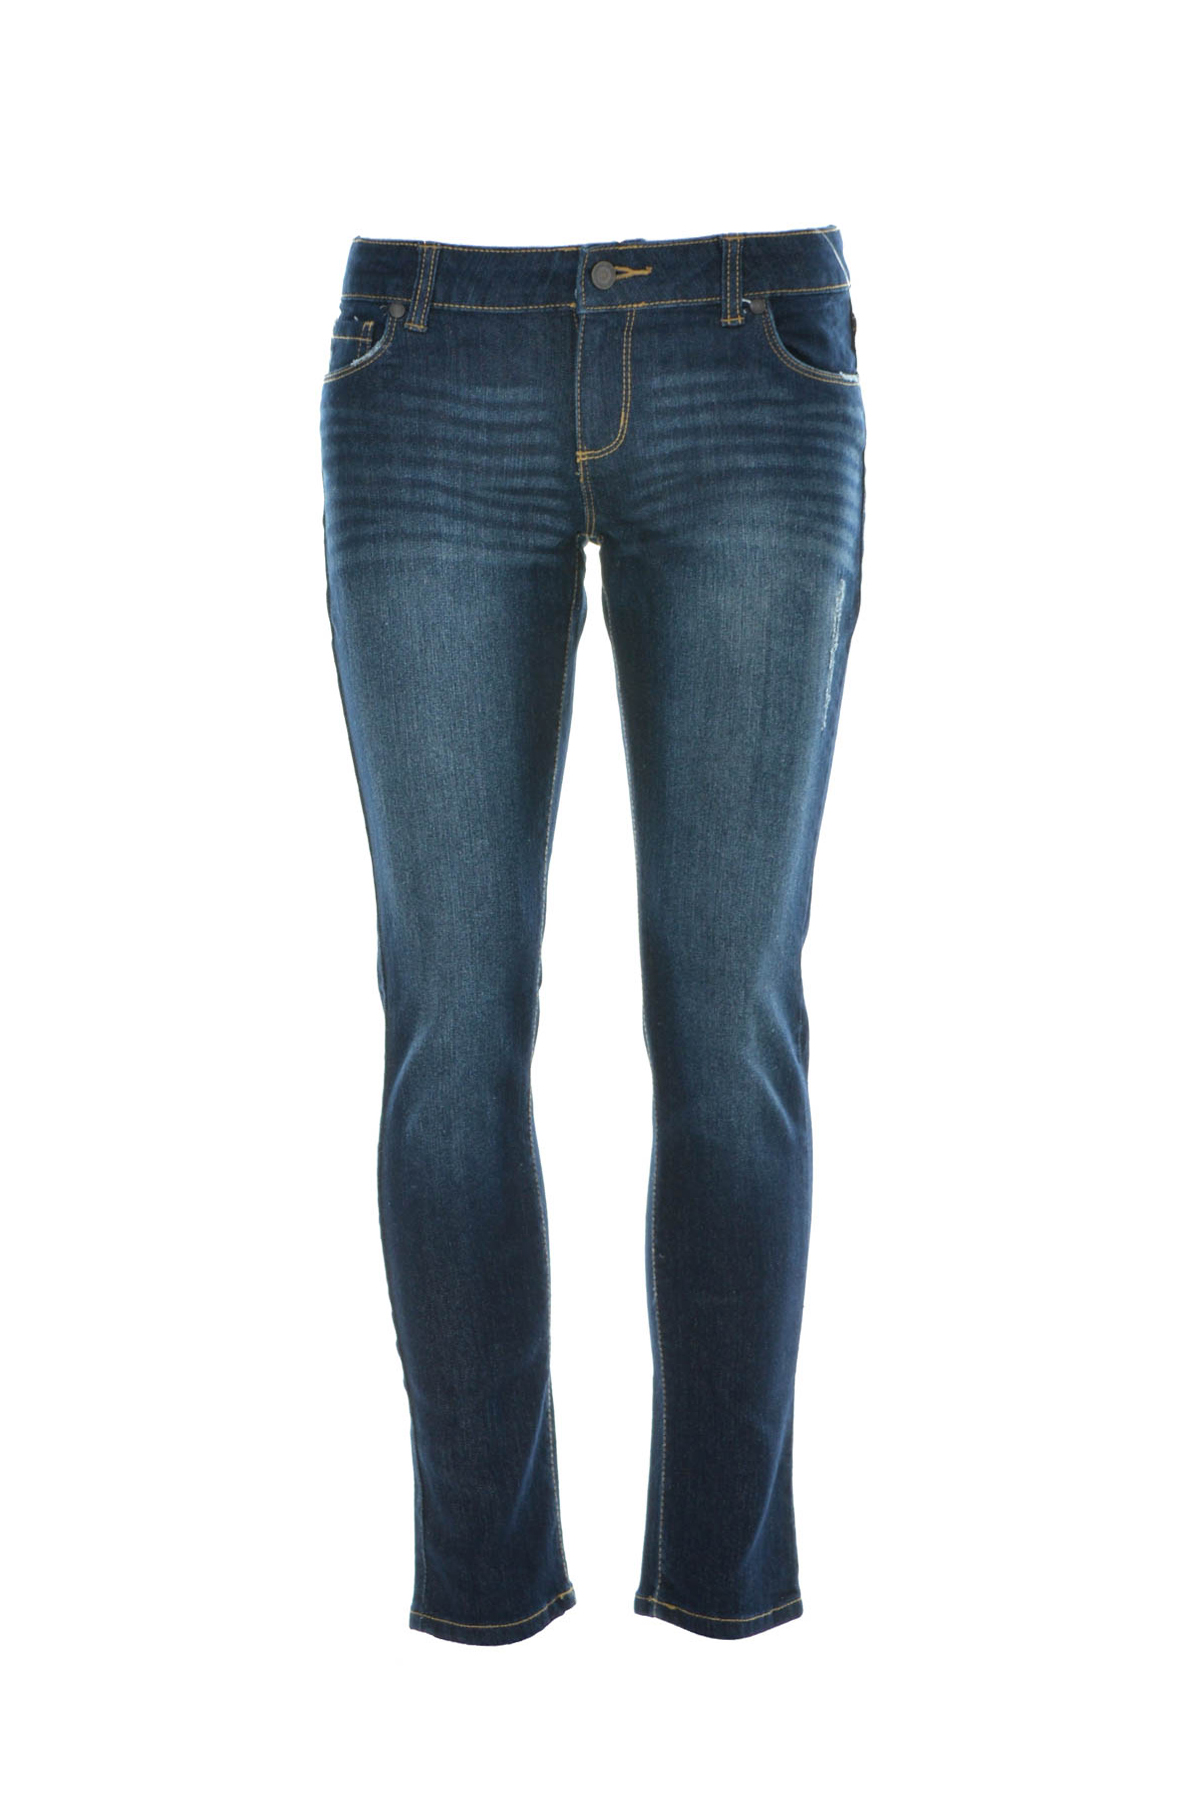 Girl's jeans - ARIZONA JEAN CO - 0